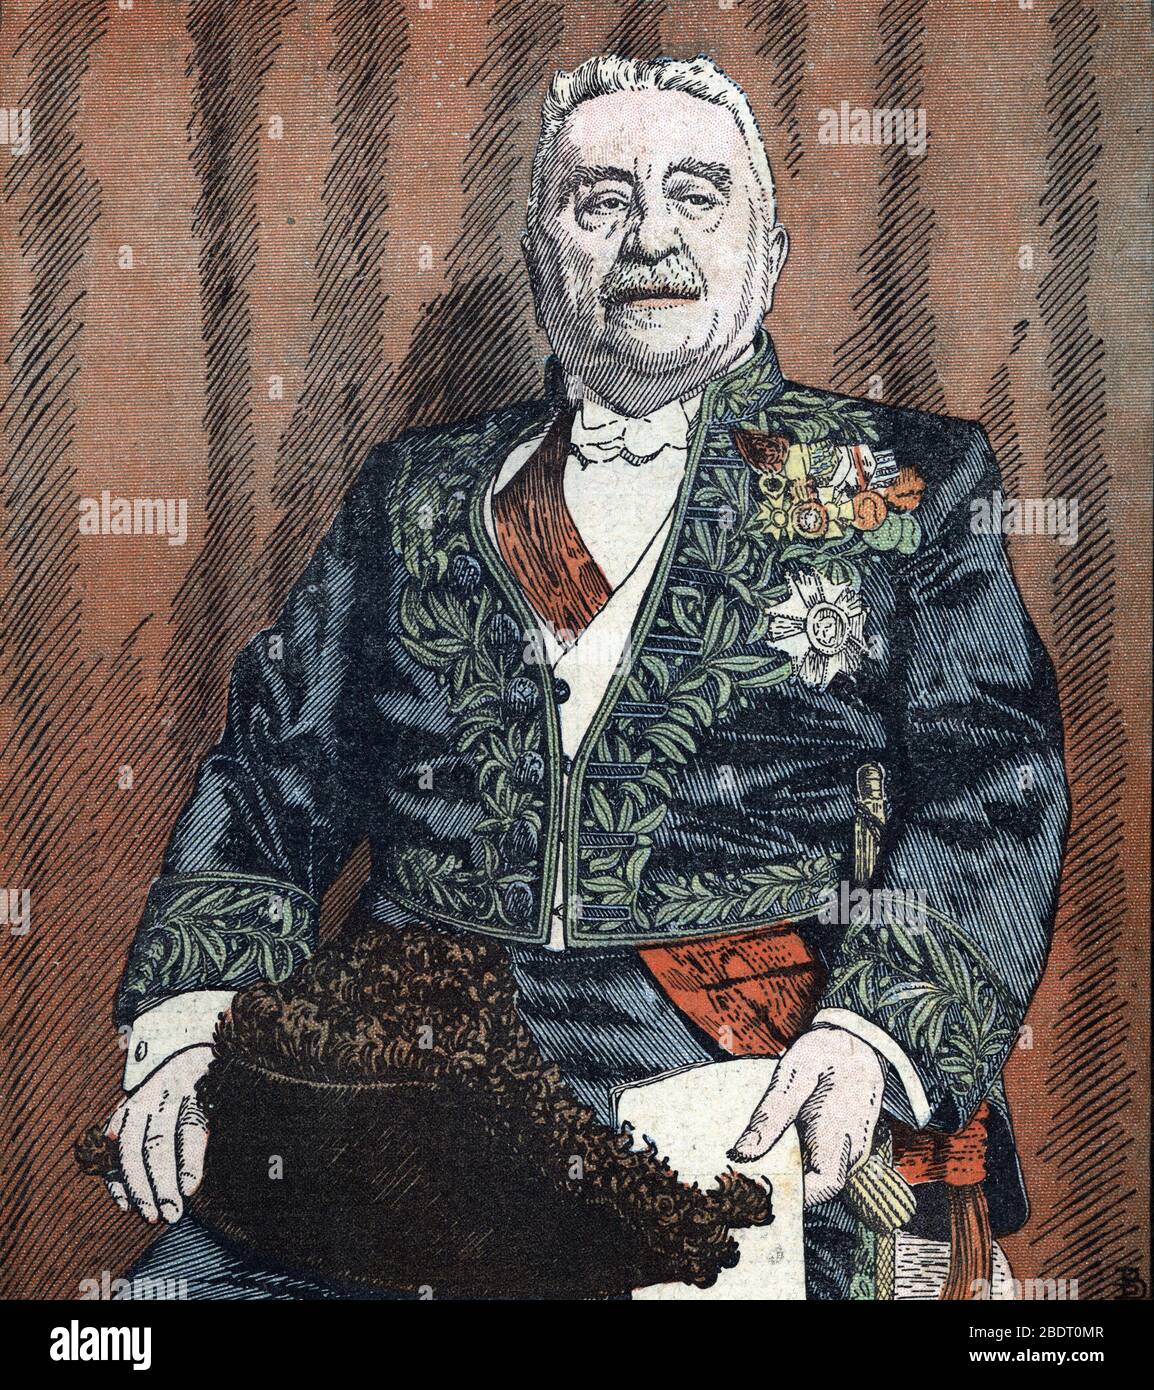 'Portrait du marechal Louis Franchet d'Esperey (1856-1942) lors de son election a l'Academie francaise' (Portrait of Louis Franchet d'Esperey elected Stock Photo